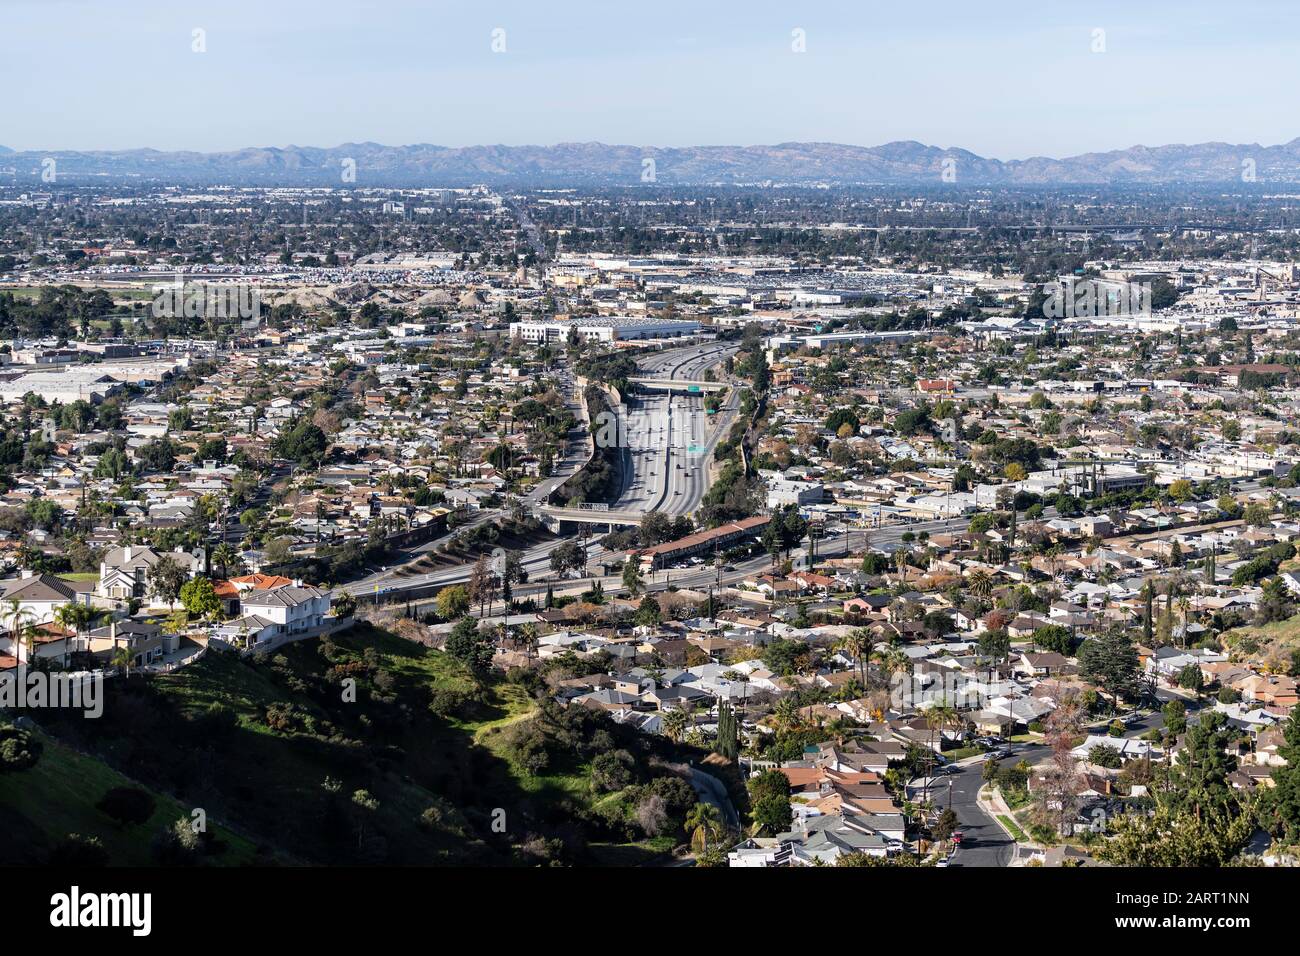 Blick auf den Verdugo Mountain von Gebäuden, Häusern und der Autobahn 5 im Sun-Valley-Viertel von Los Angeles, Kalifornien. Stockfoto